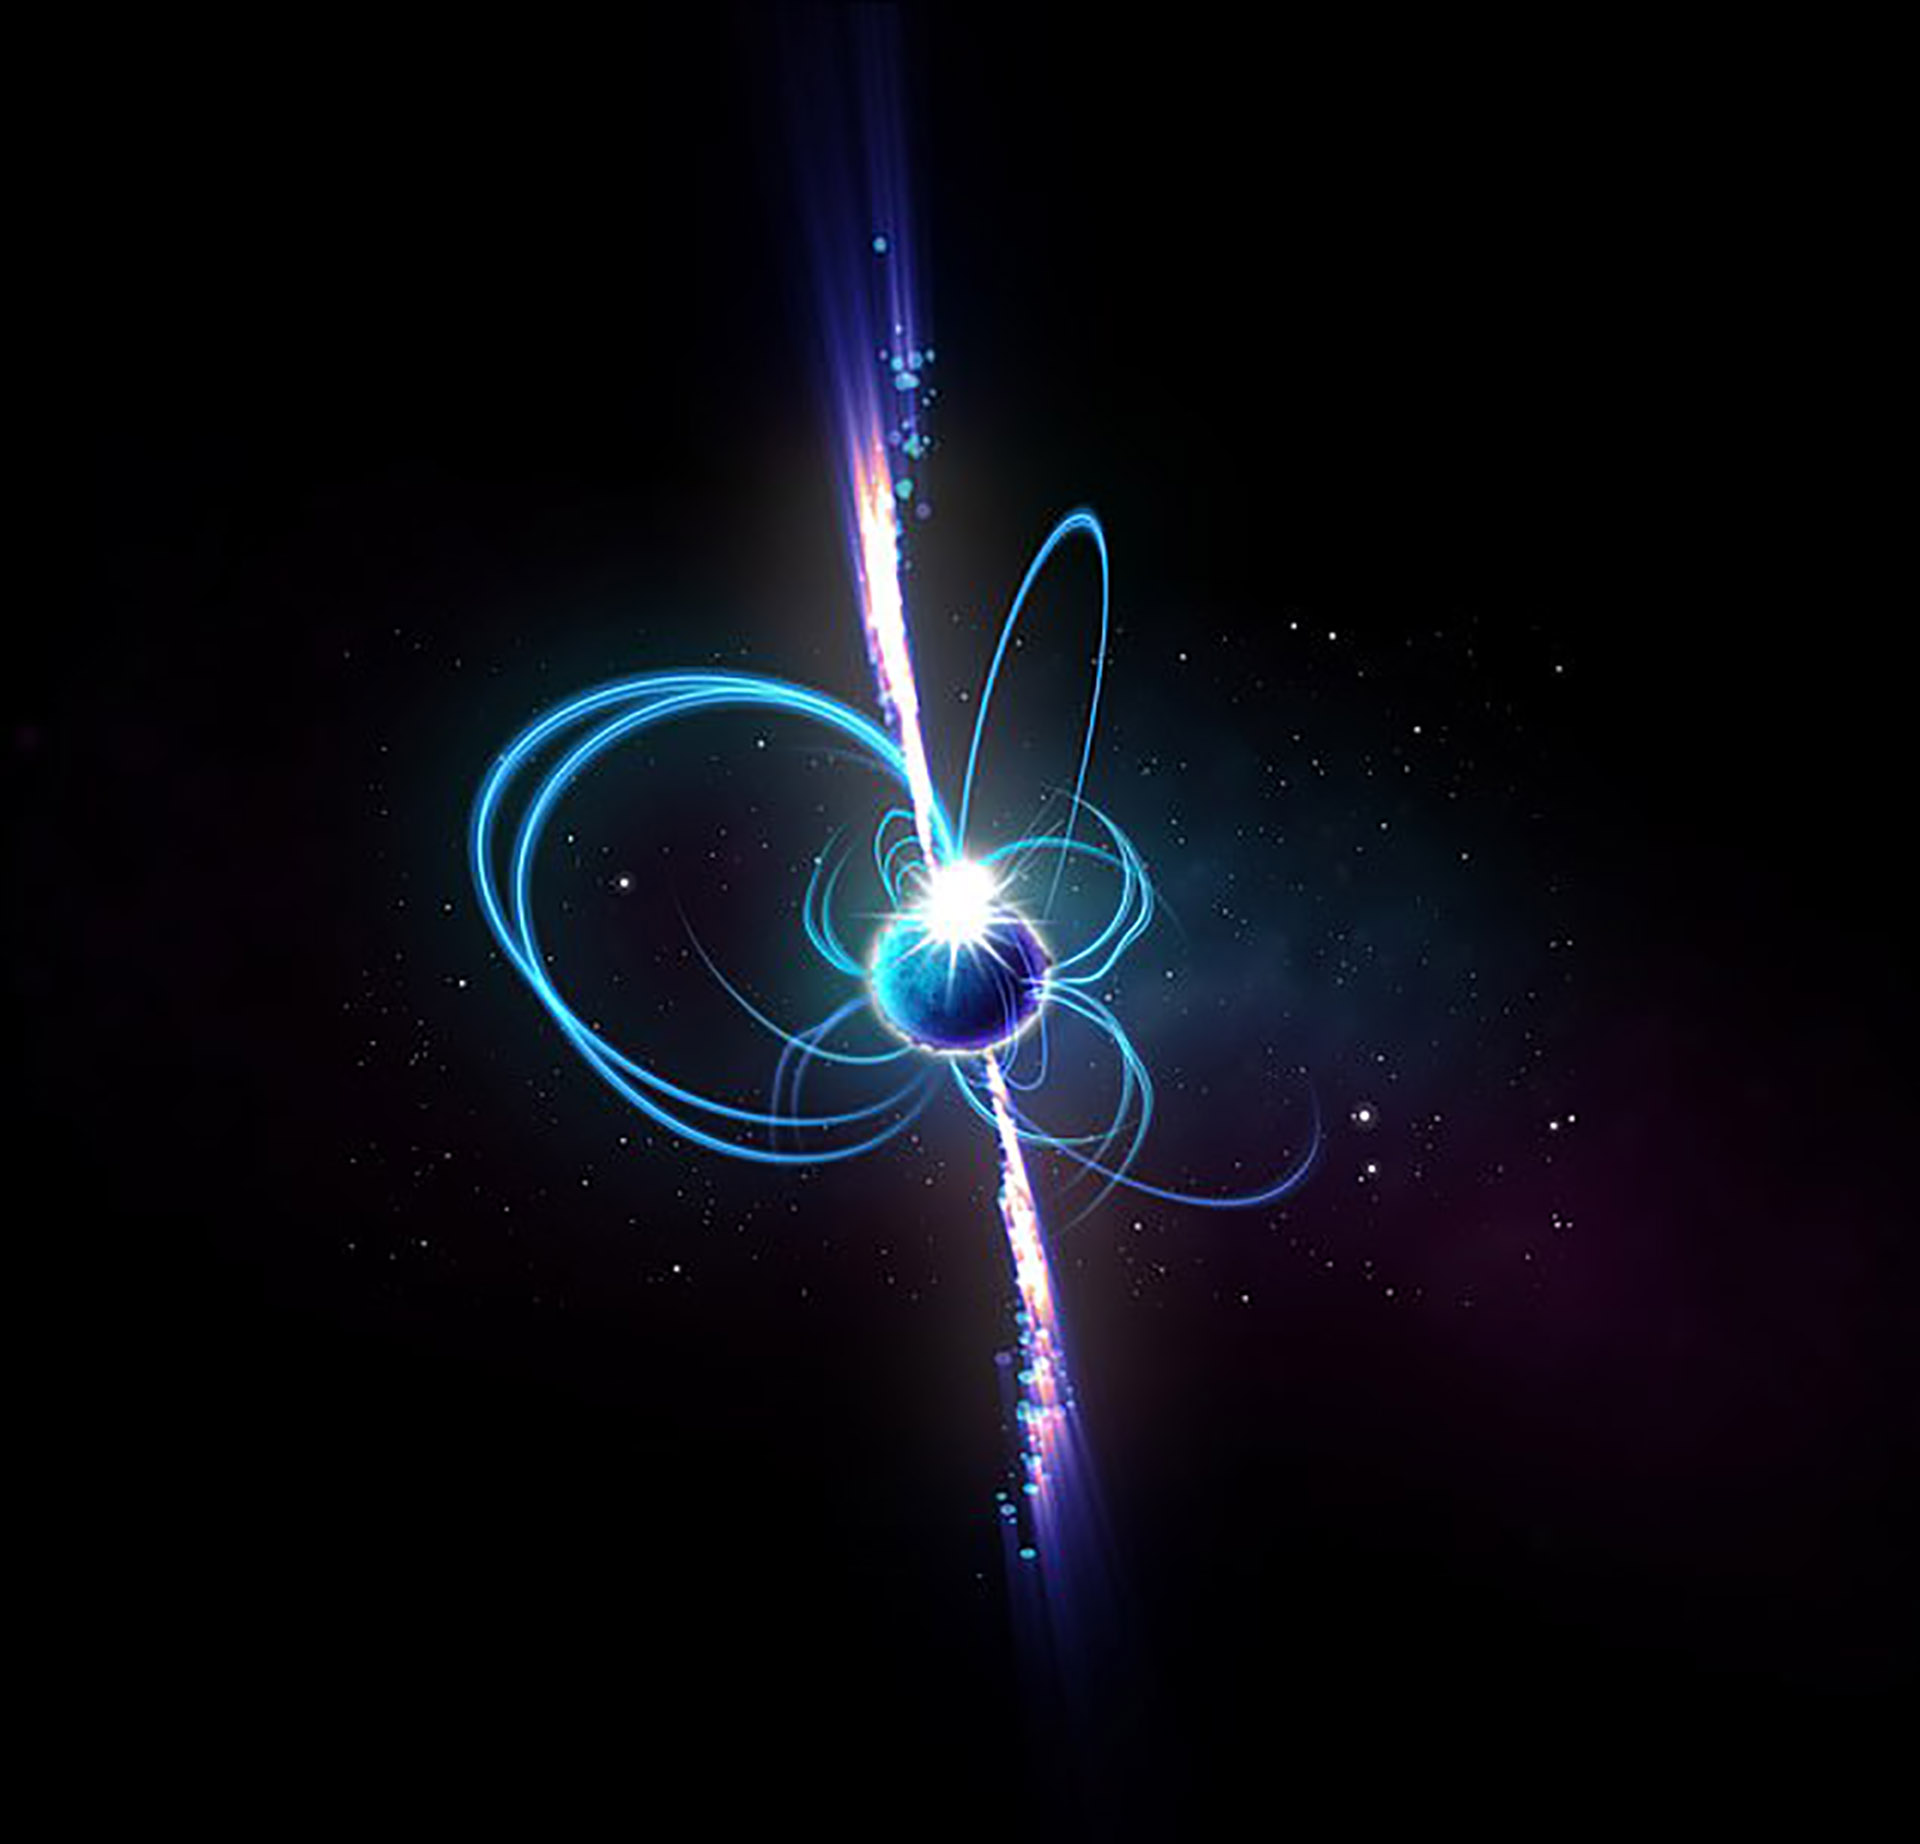 La impresión de un artista de cómo se vería el fenómeno si fuera un magnetar (ICRAR)